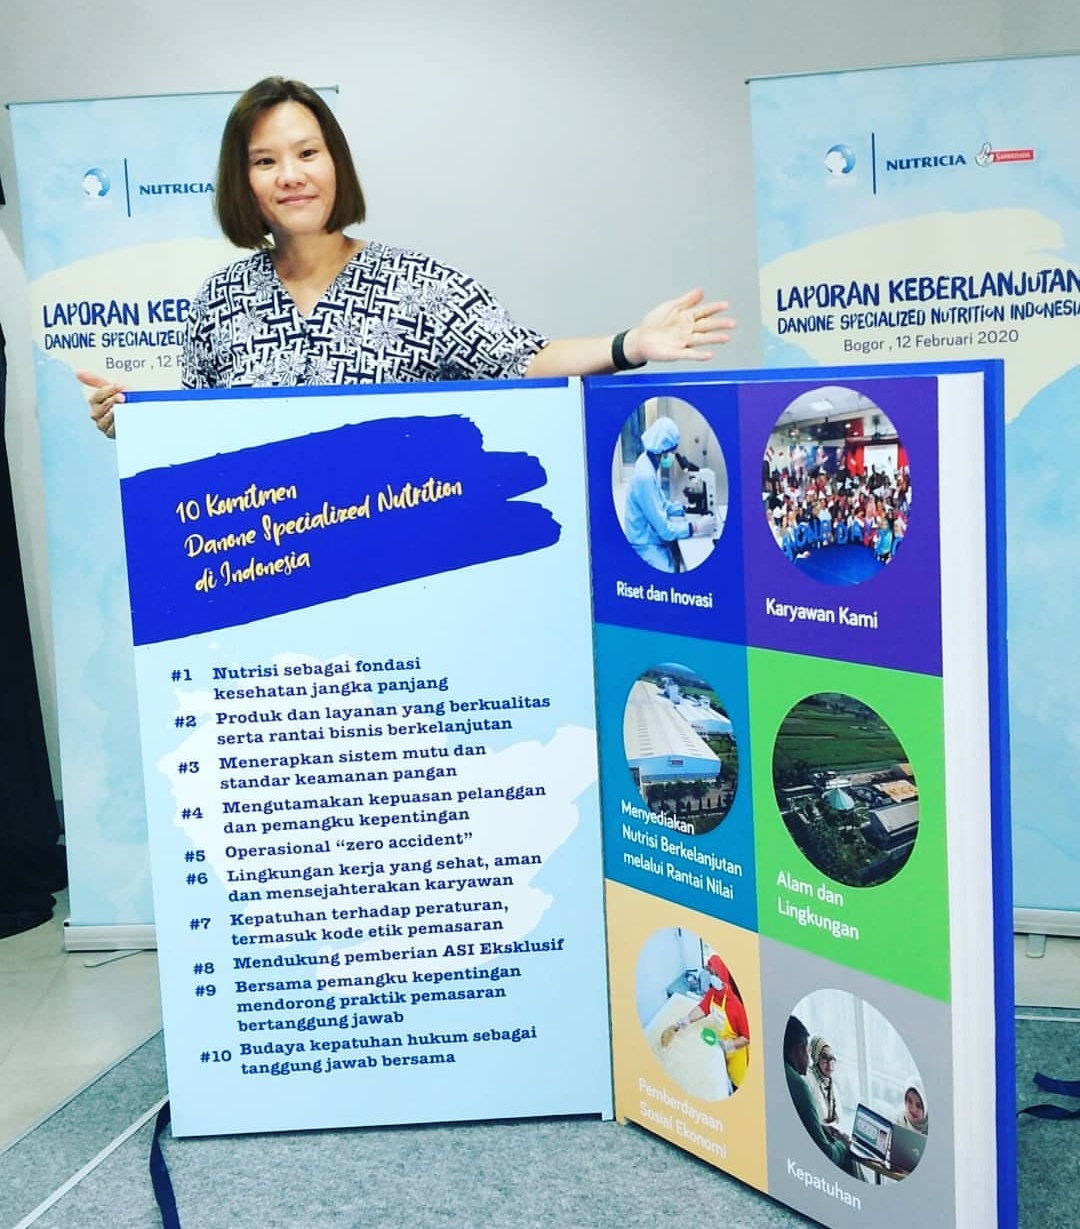 Peluncuran Laporan Keberlanjutan Danone Specialized Nutrition Indonesia